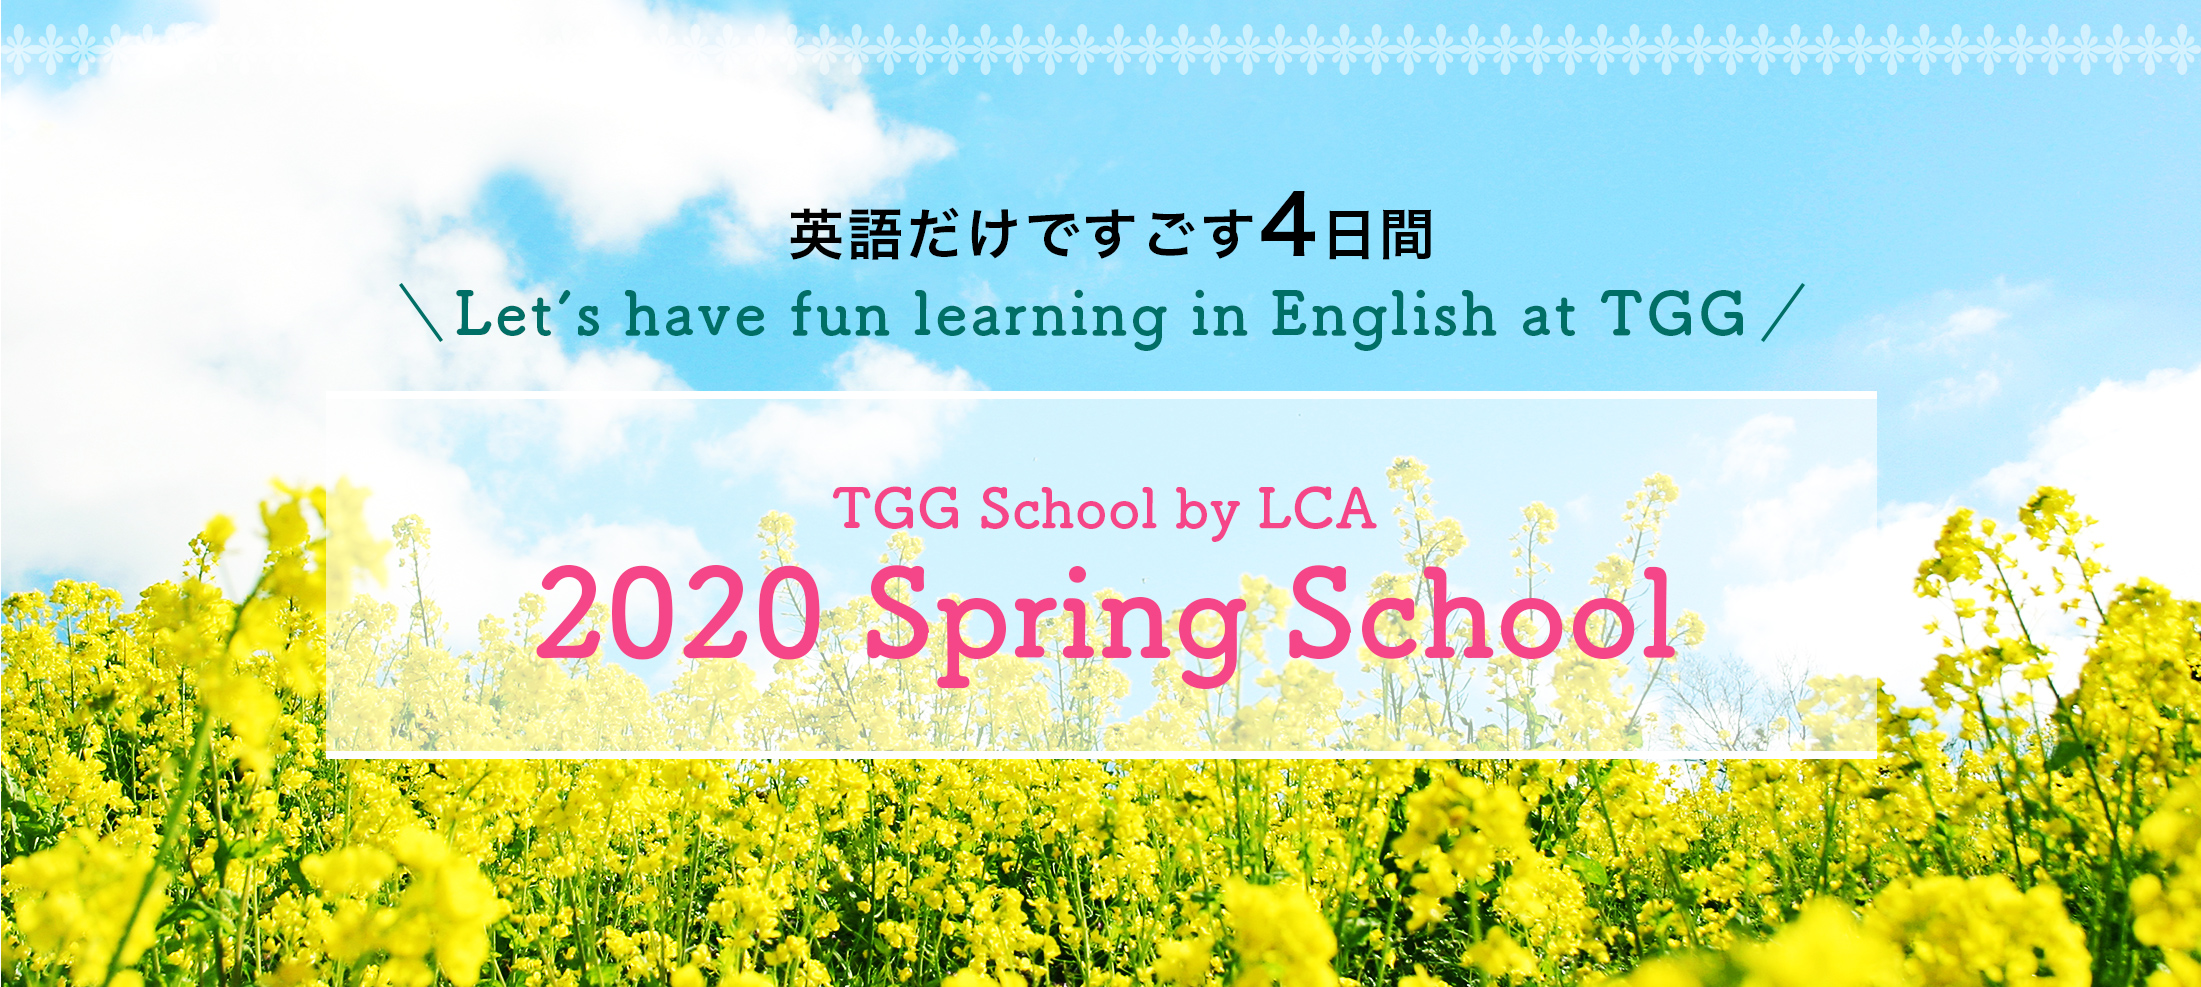 英語だけですごす4日間 TGG School by LCA 2020 Spring School